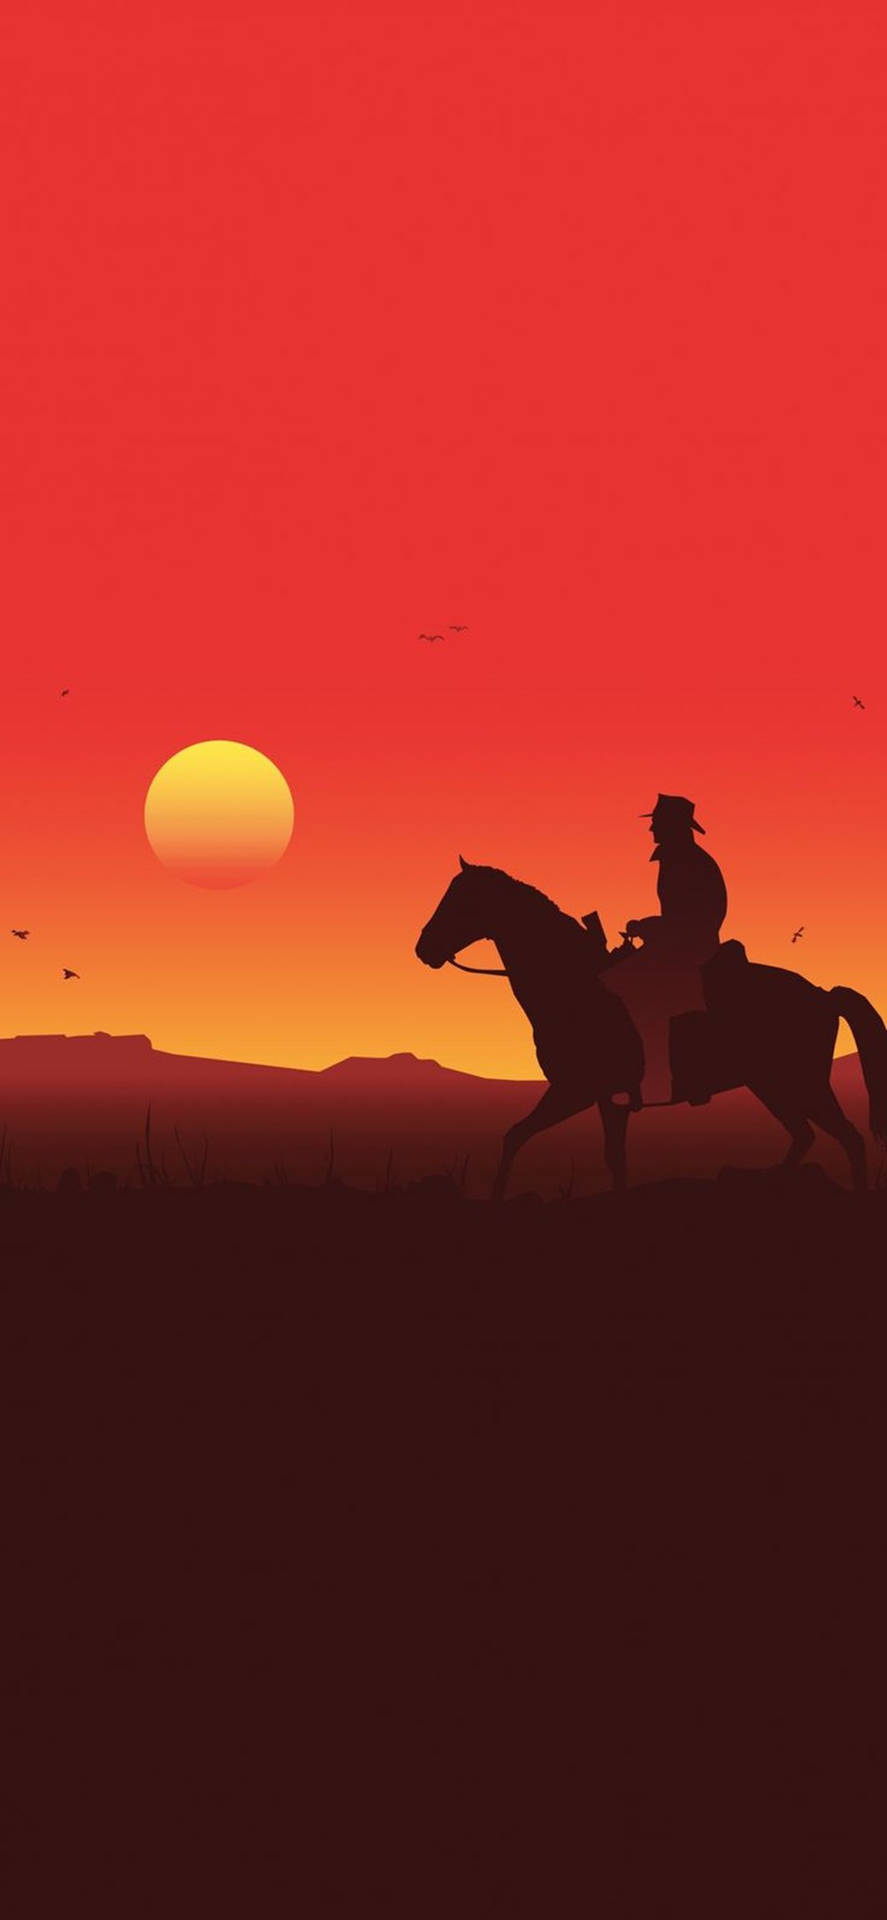 Mötnamnet Från Vilda Västern - Arthur Morgans Häst I Red Dead Redemption 2. Wallpaper